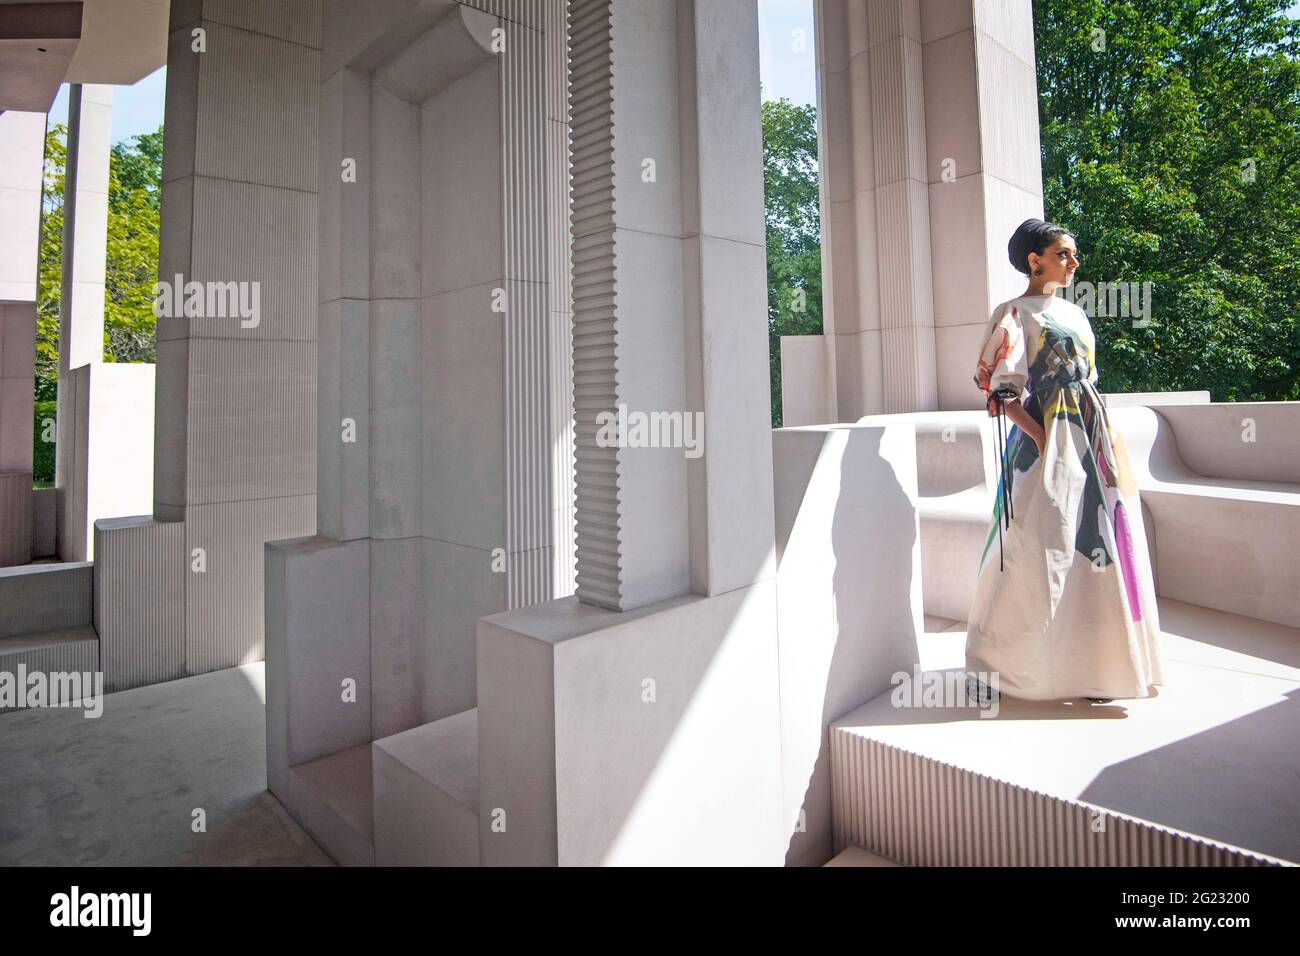 El arquitecto Sumayya Vally durante una vista preliminar de prensa para el Pabellón Serpentino 2021, diseñado por el Contraespacio de Práctica con sede en Johannesburgo, en la Serpentine Gallery, Londres. Fecha de la foto: Martes 8 de junio de 2021. Foto de stock